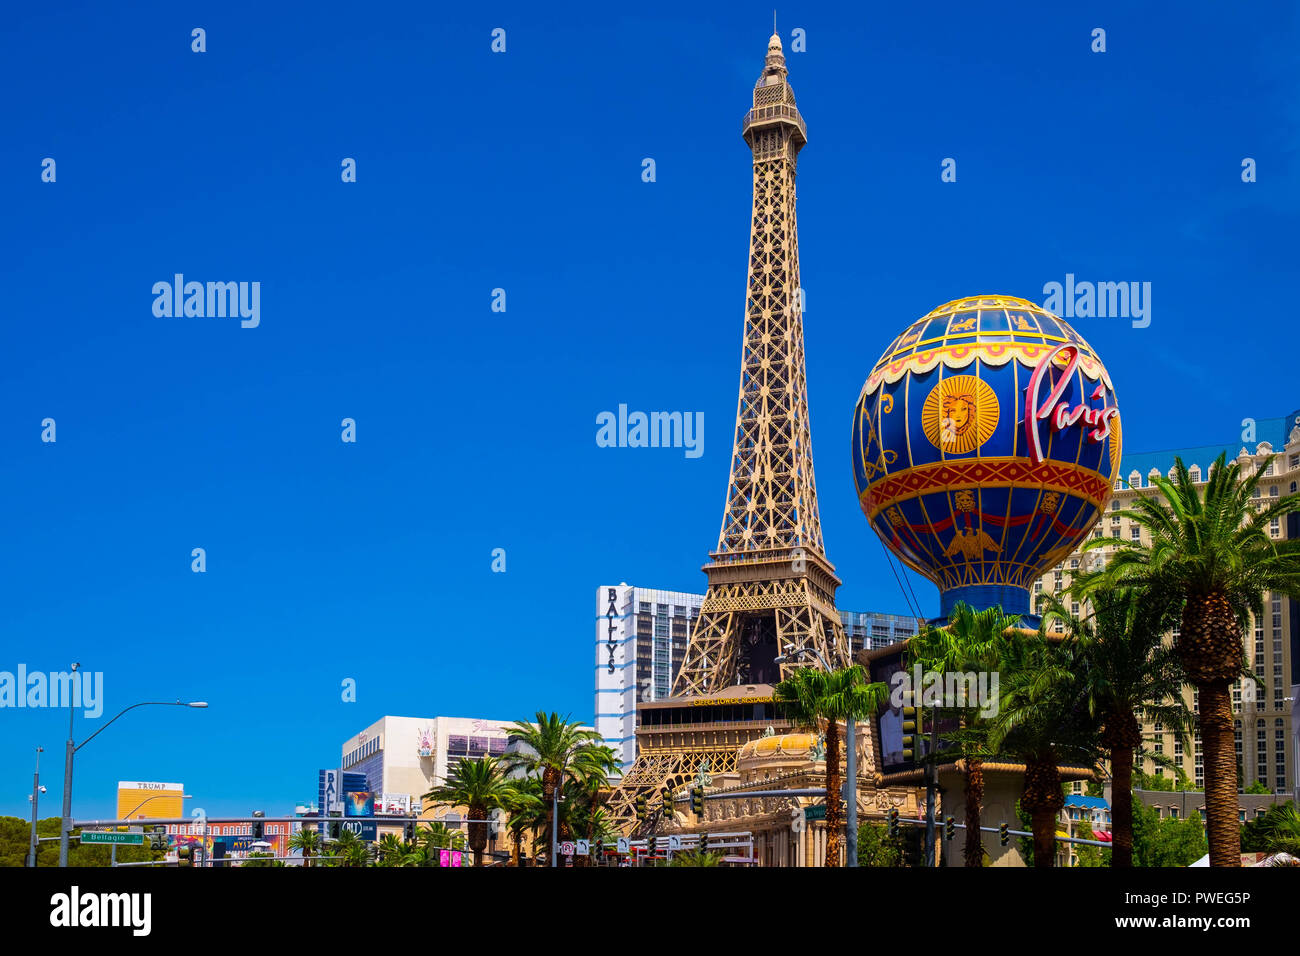 El Paris Las Vegas Hotel and Resort en Las Vegas Boulevard, el Strip, Nevada Foto de stock